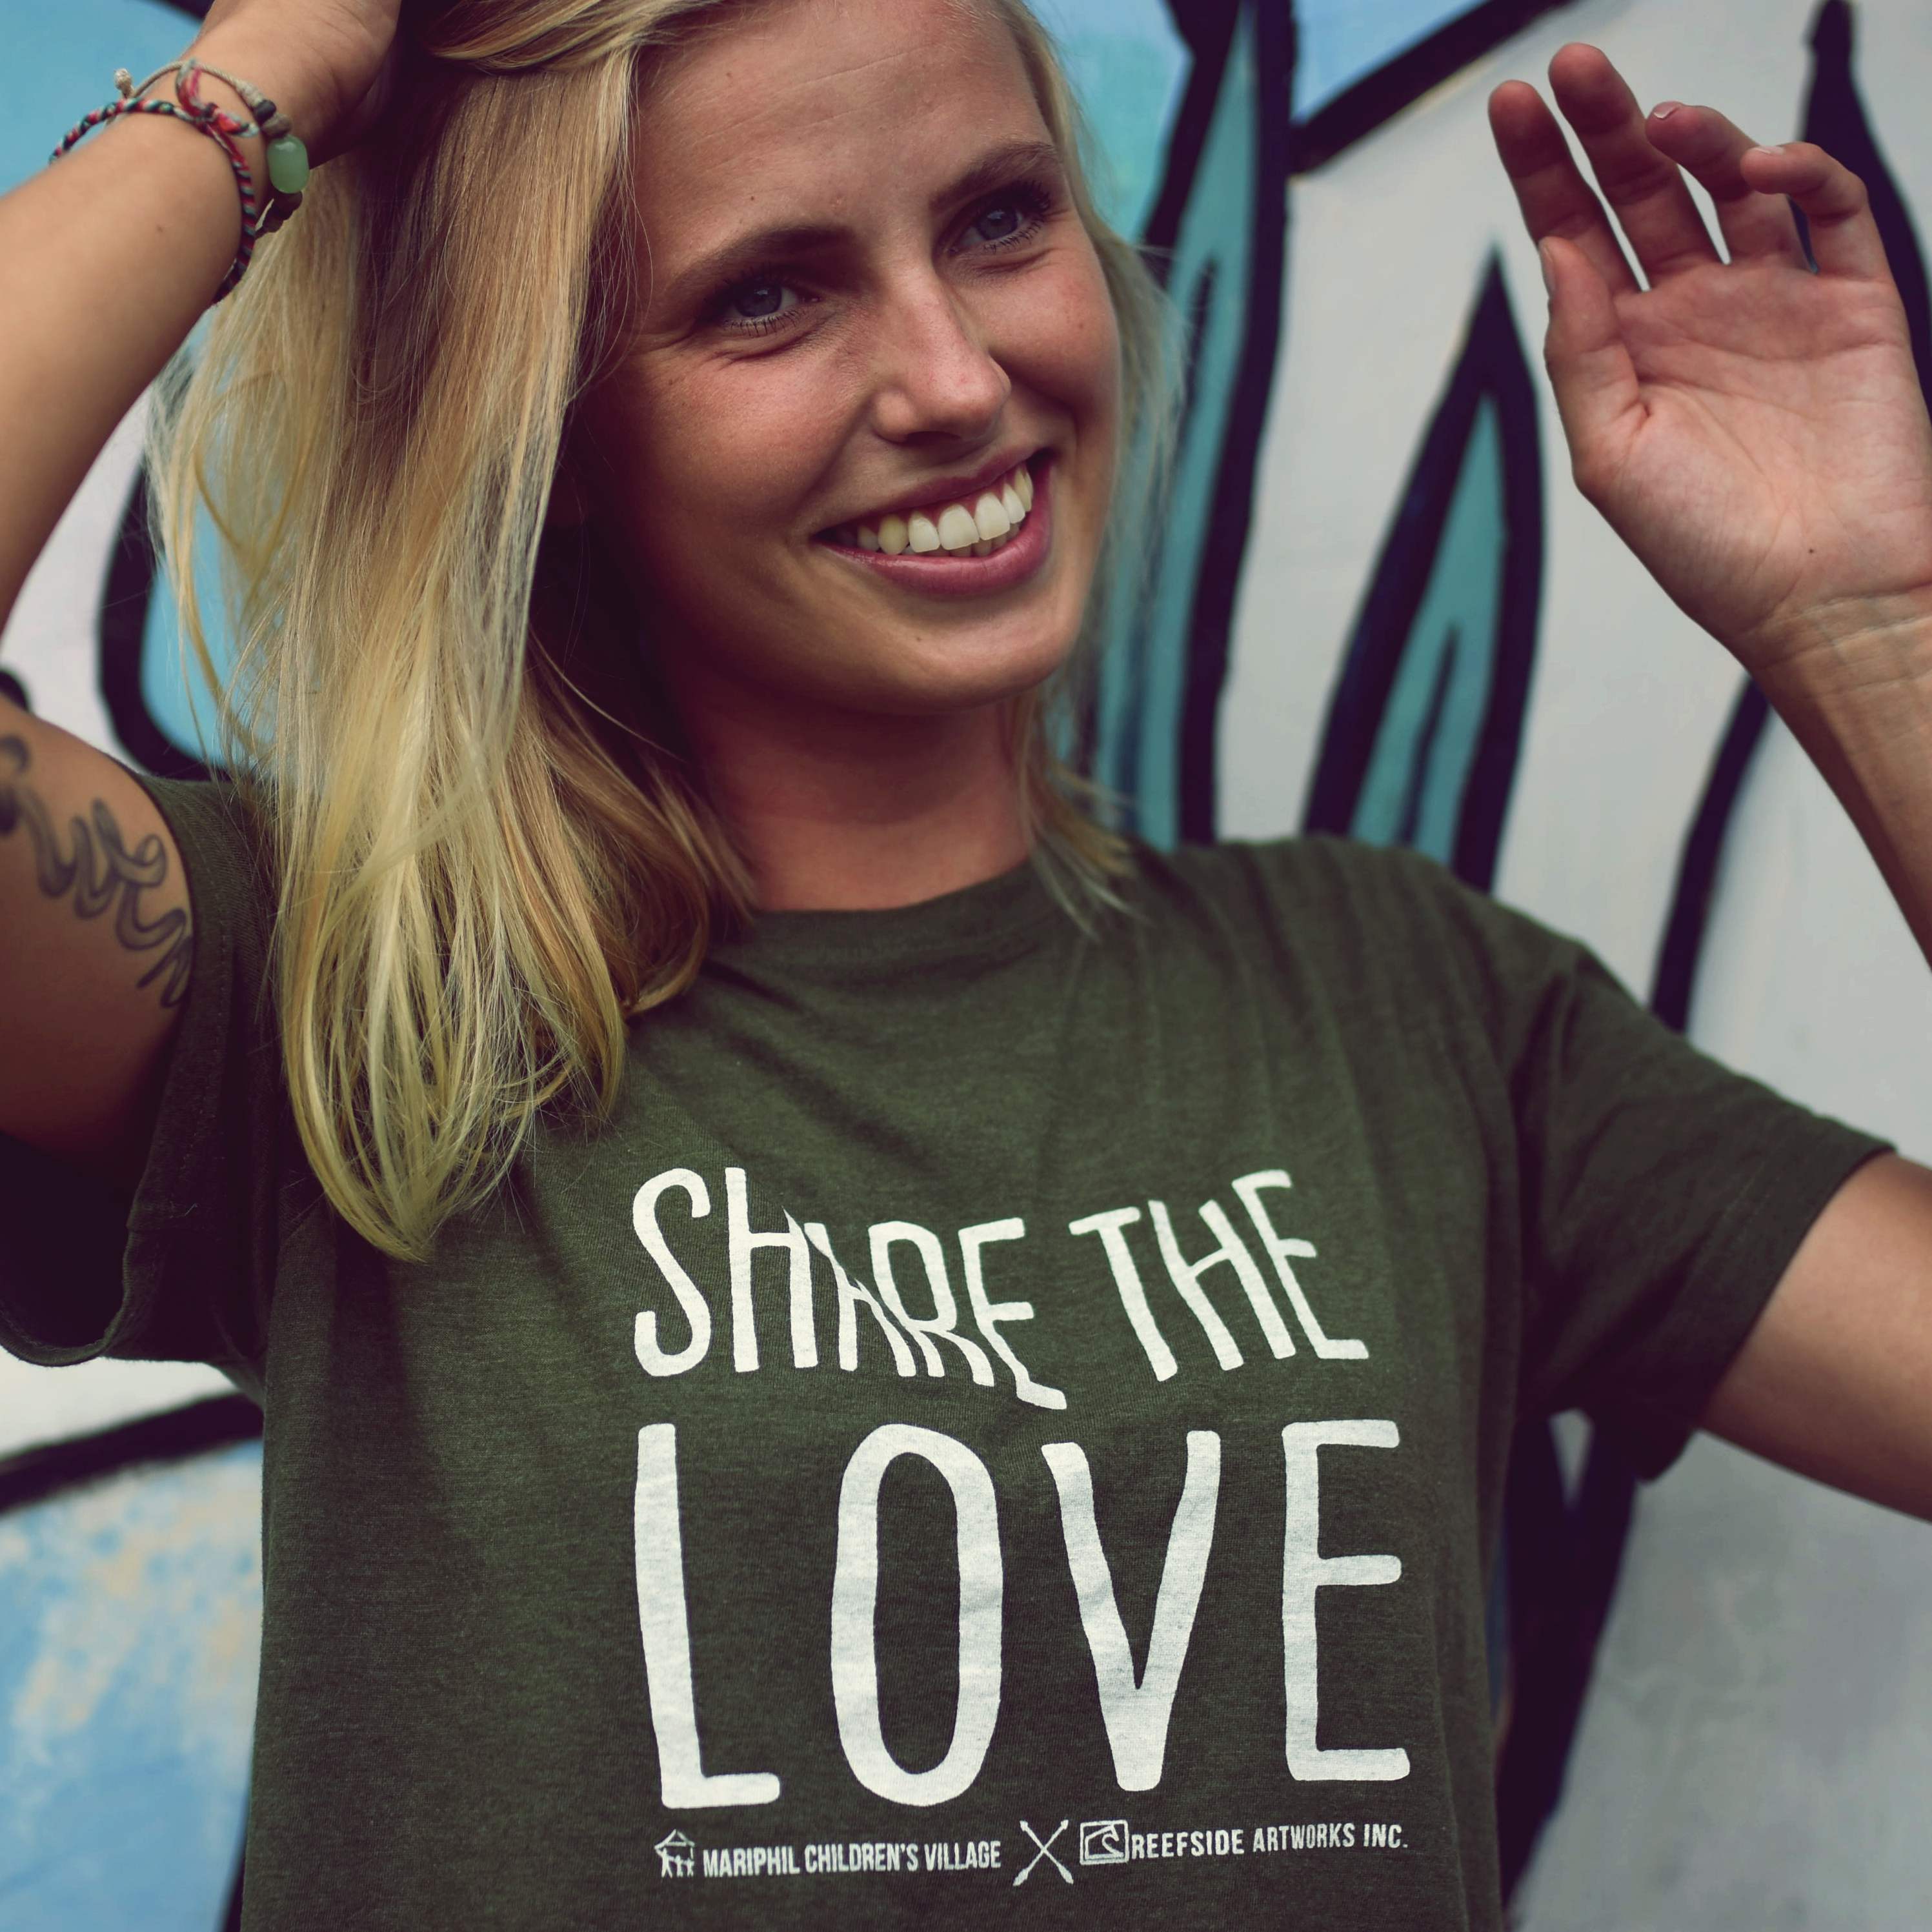 DSC 8519 - Share the love T-shirts